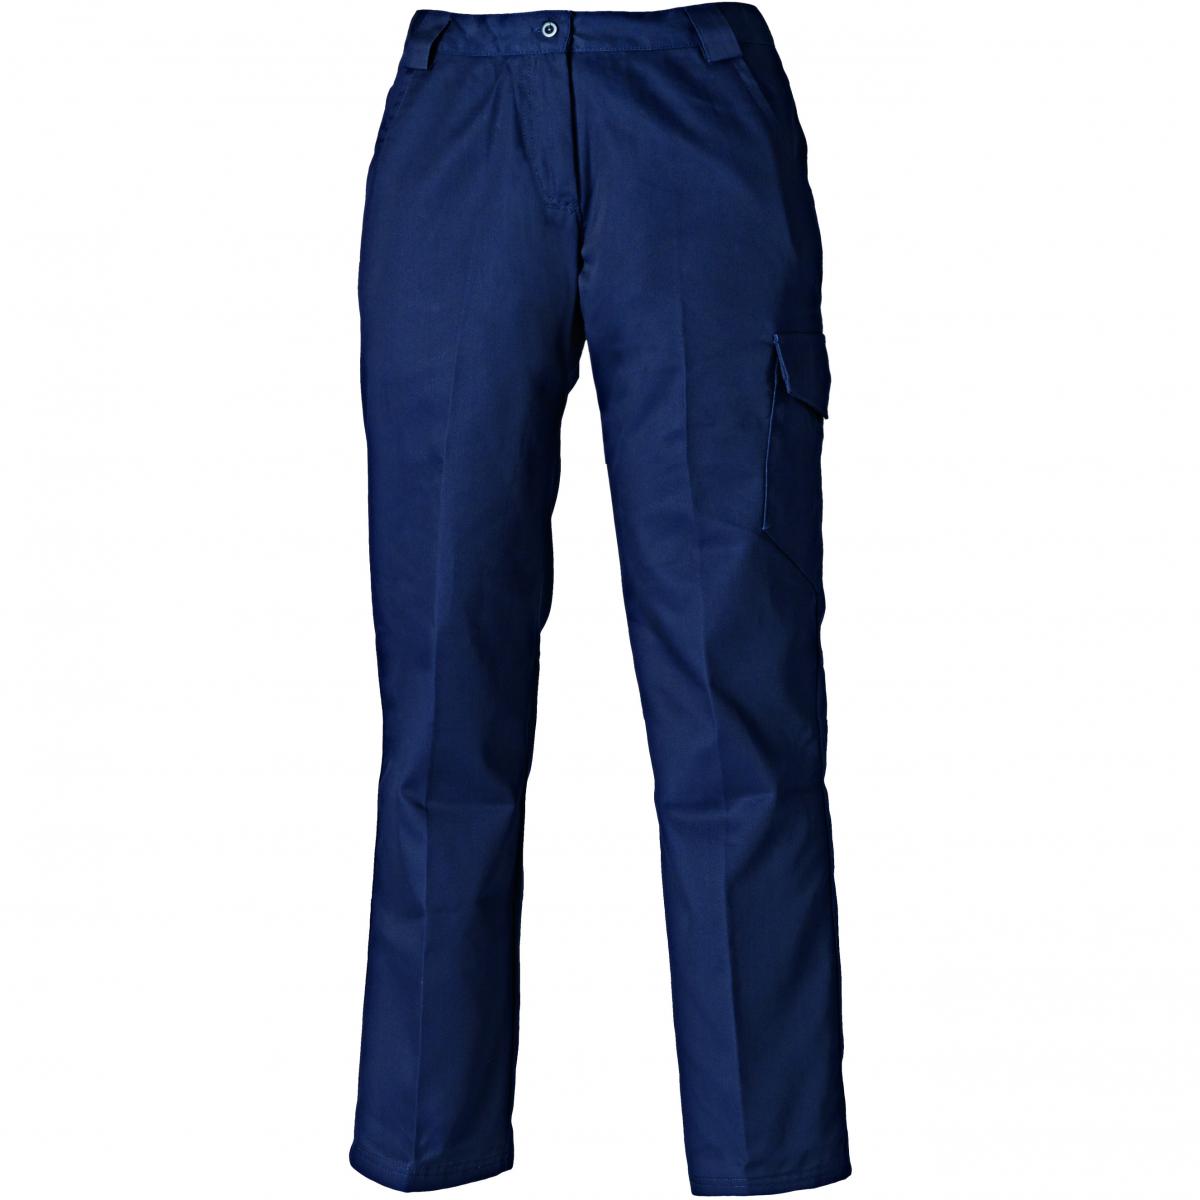 Hersteller: Dickies Herstellernummer: WD855 Artikelbezeichnung: Redhawk Damenbundhose - Arbeishose Farbe: Marineblau